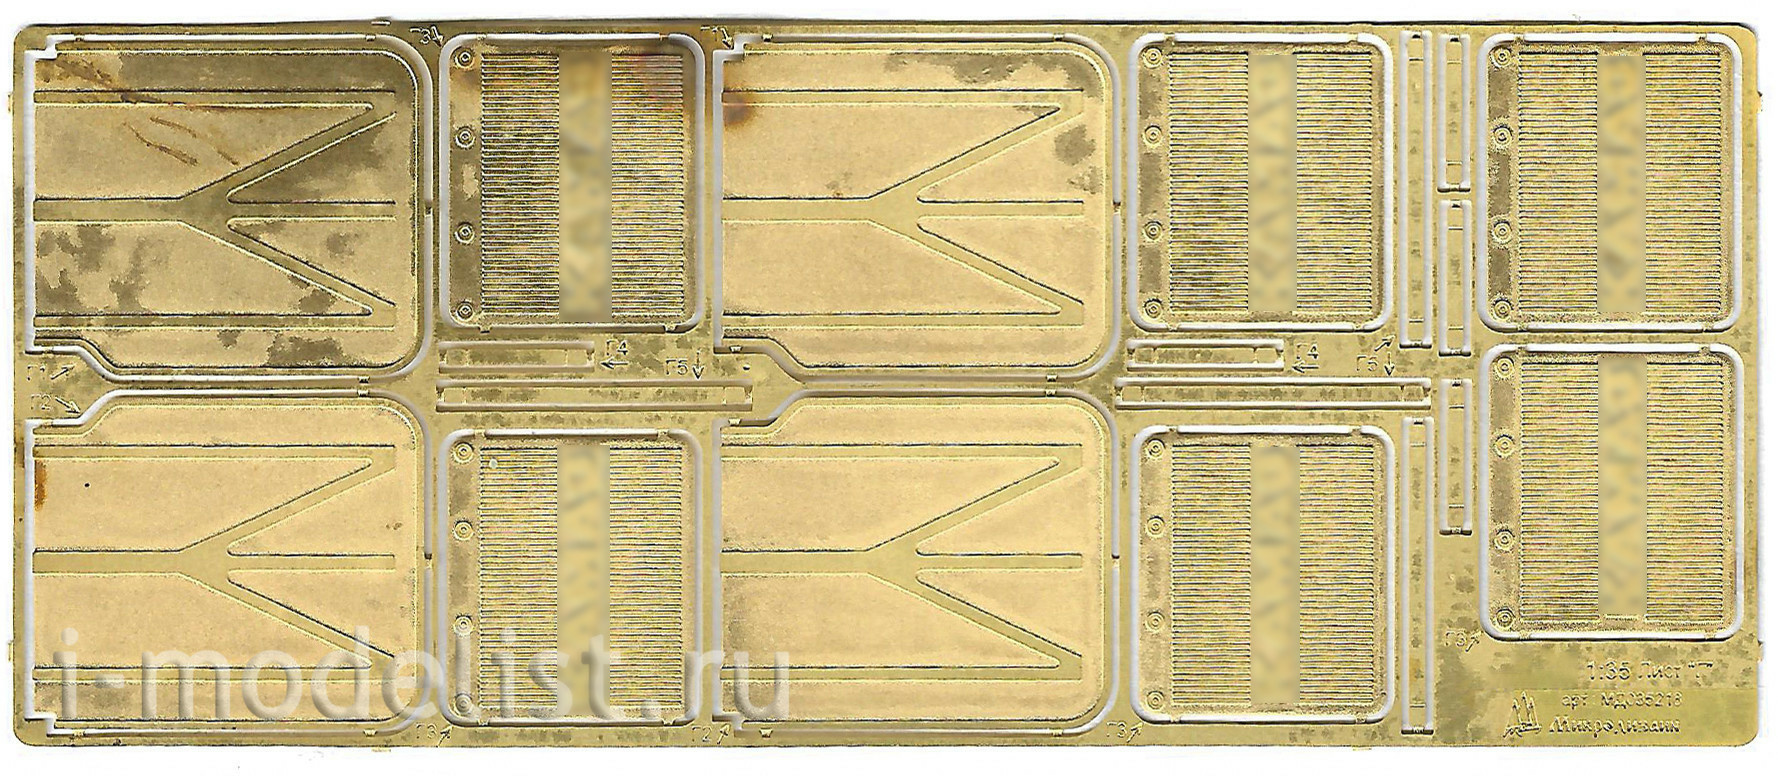 035218 Микродизайн 1/35 Расширенный набор фототравления для советского грузового автомобиля (ICM)